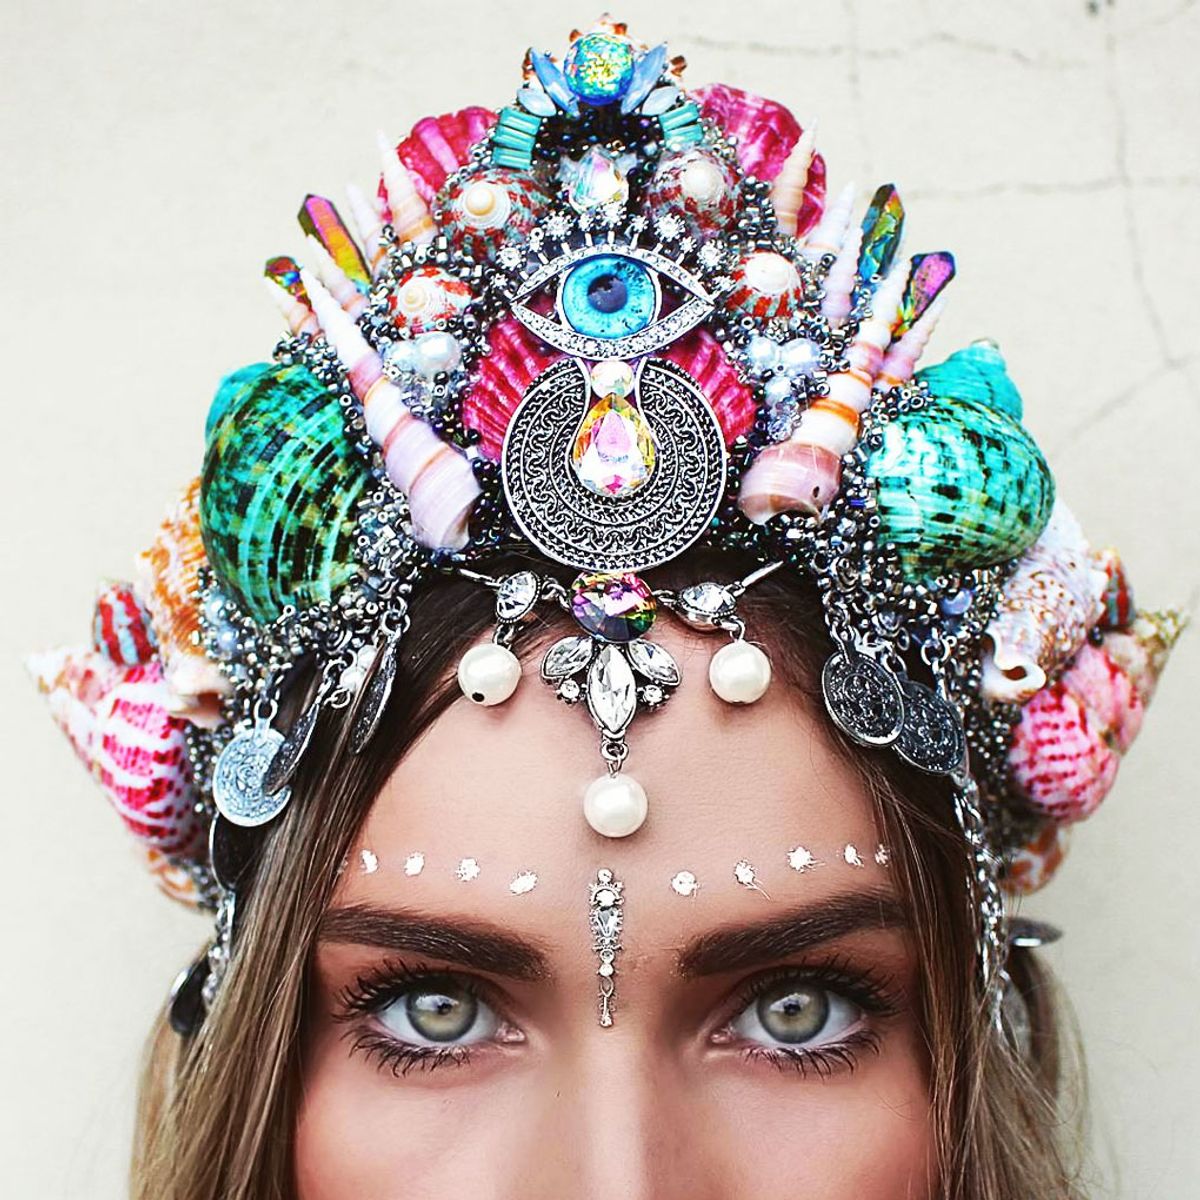 Mermaid Crowns sind der neueste Trend auf Instagram